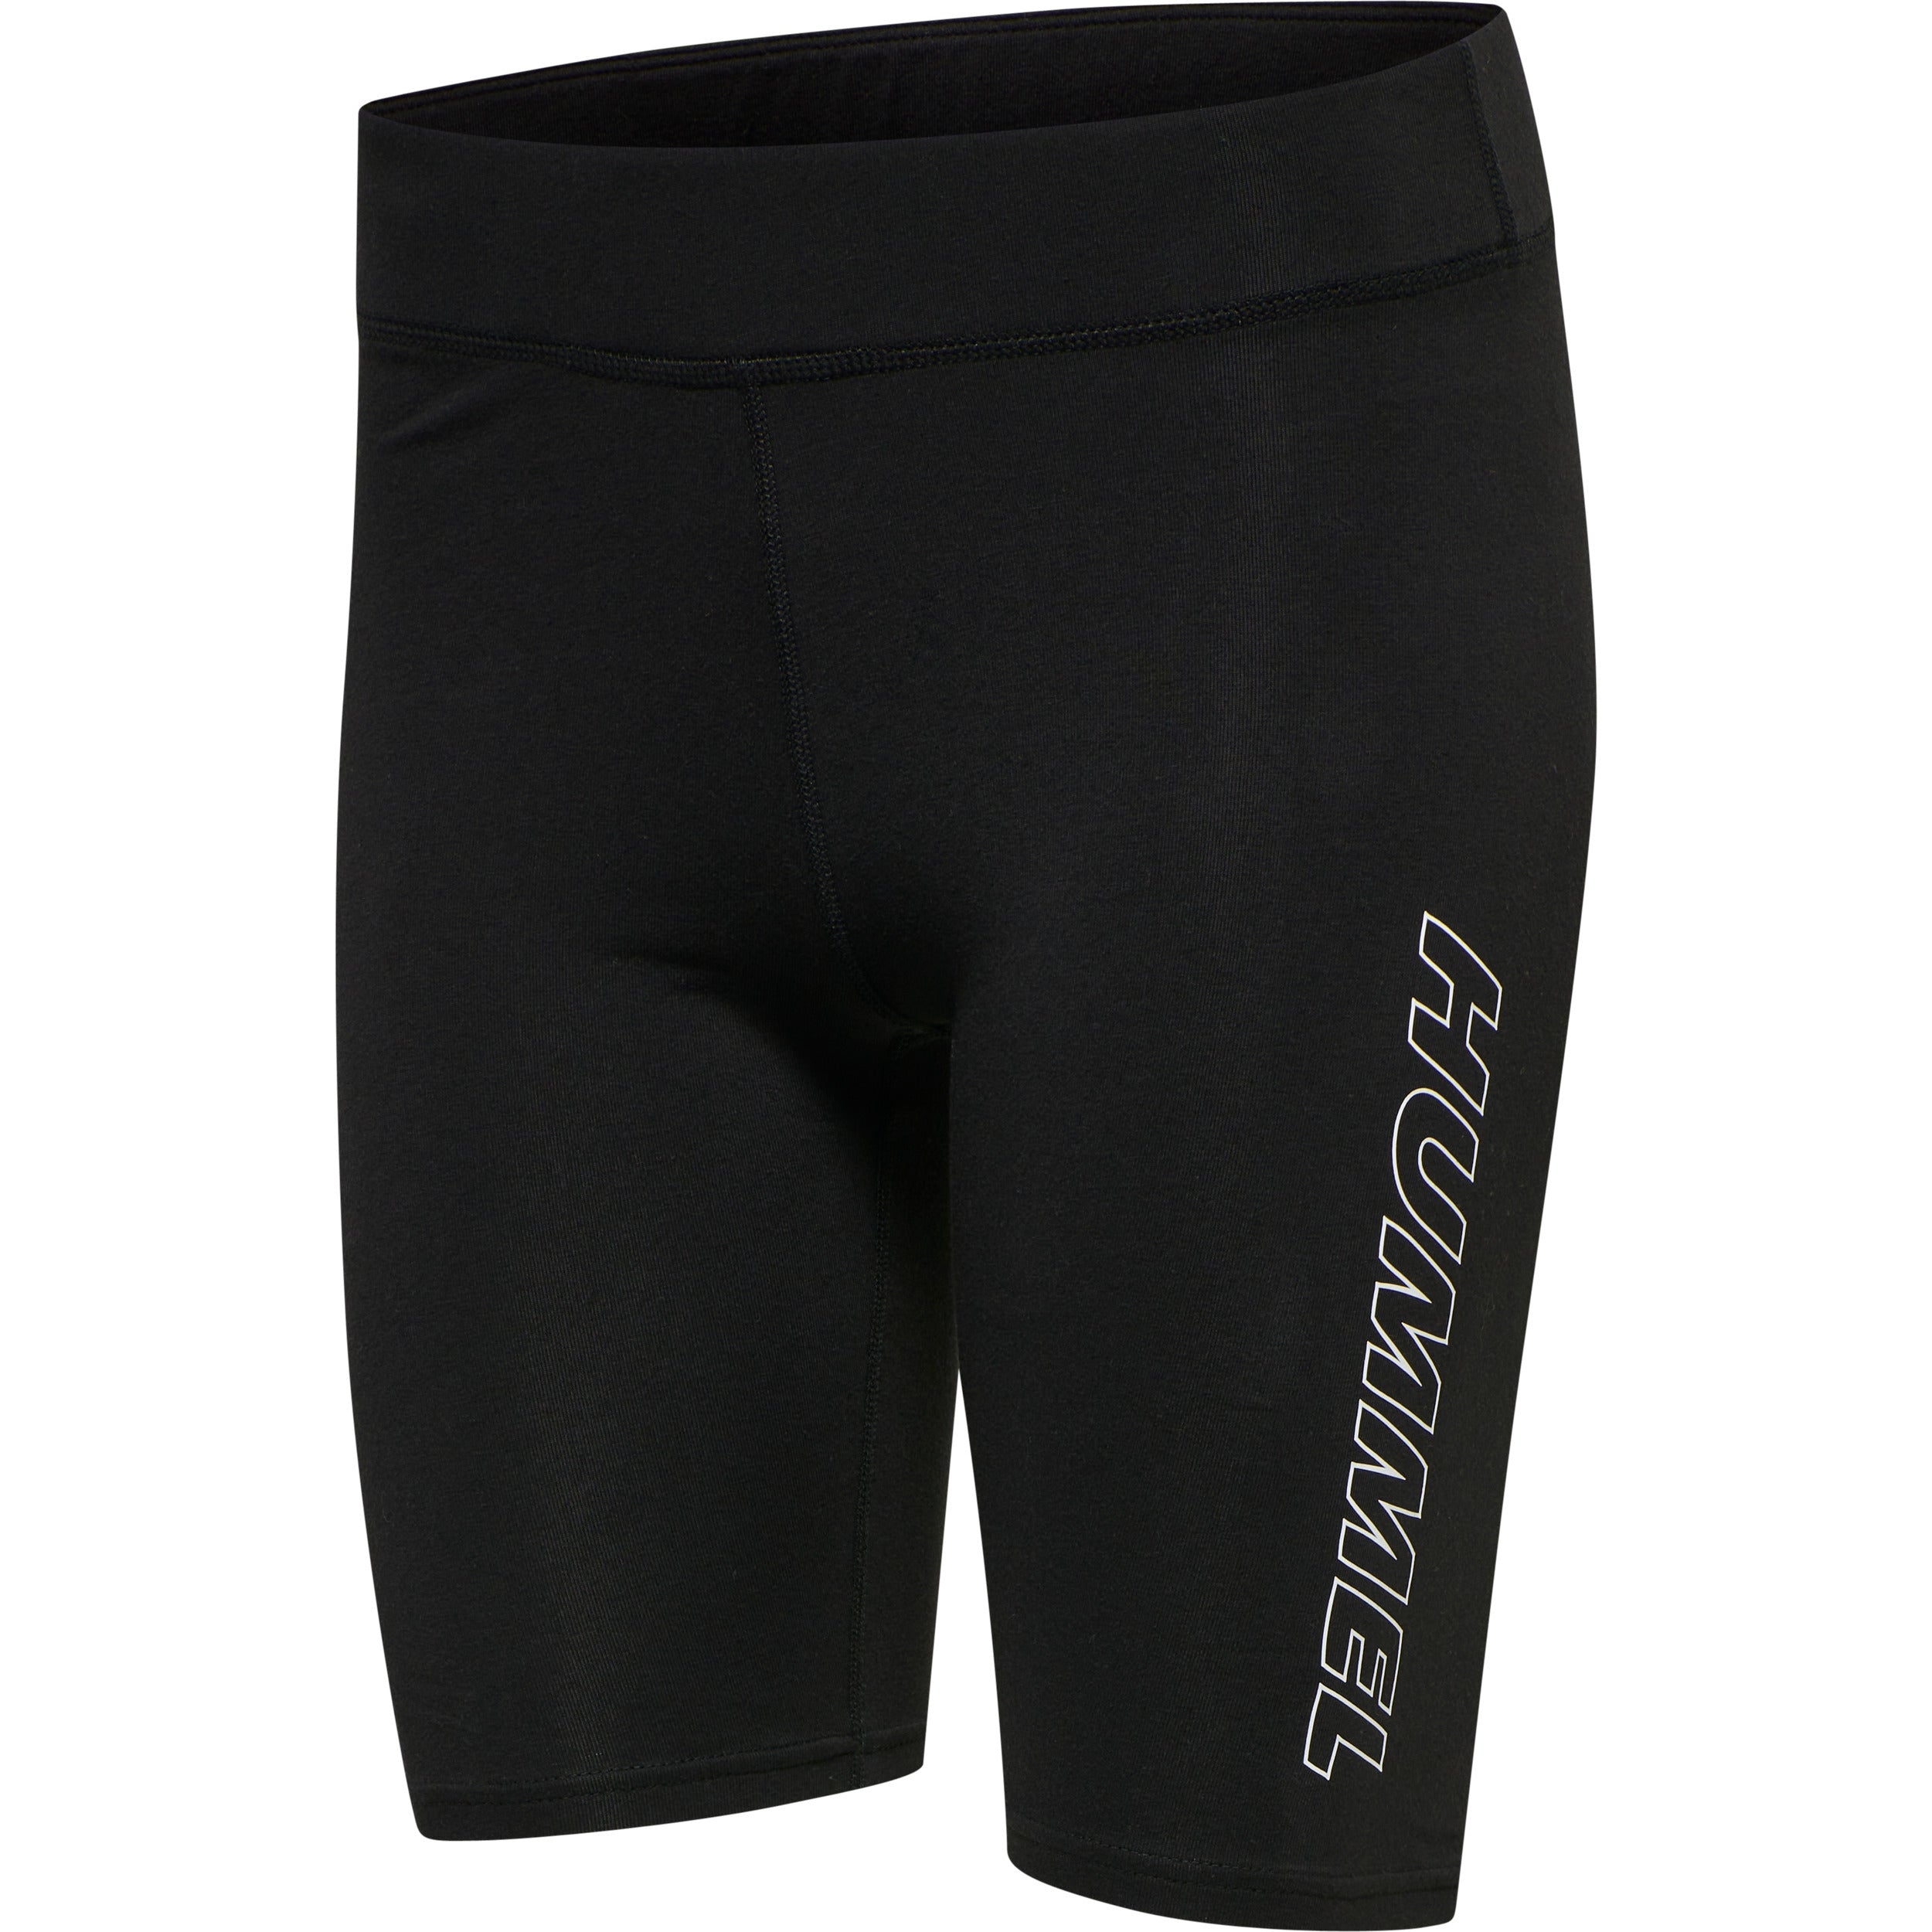 Brug Hummel MAJA Cotton Tight Shorts - Black til en forbedret oplevelse